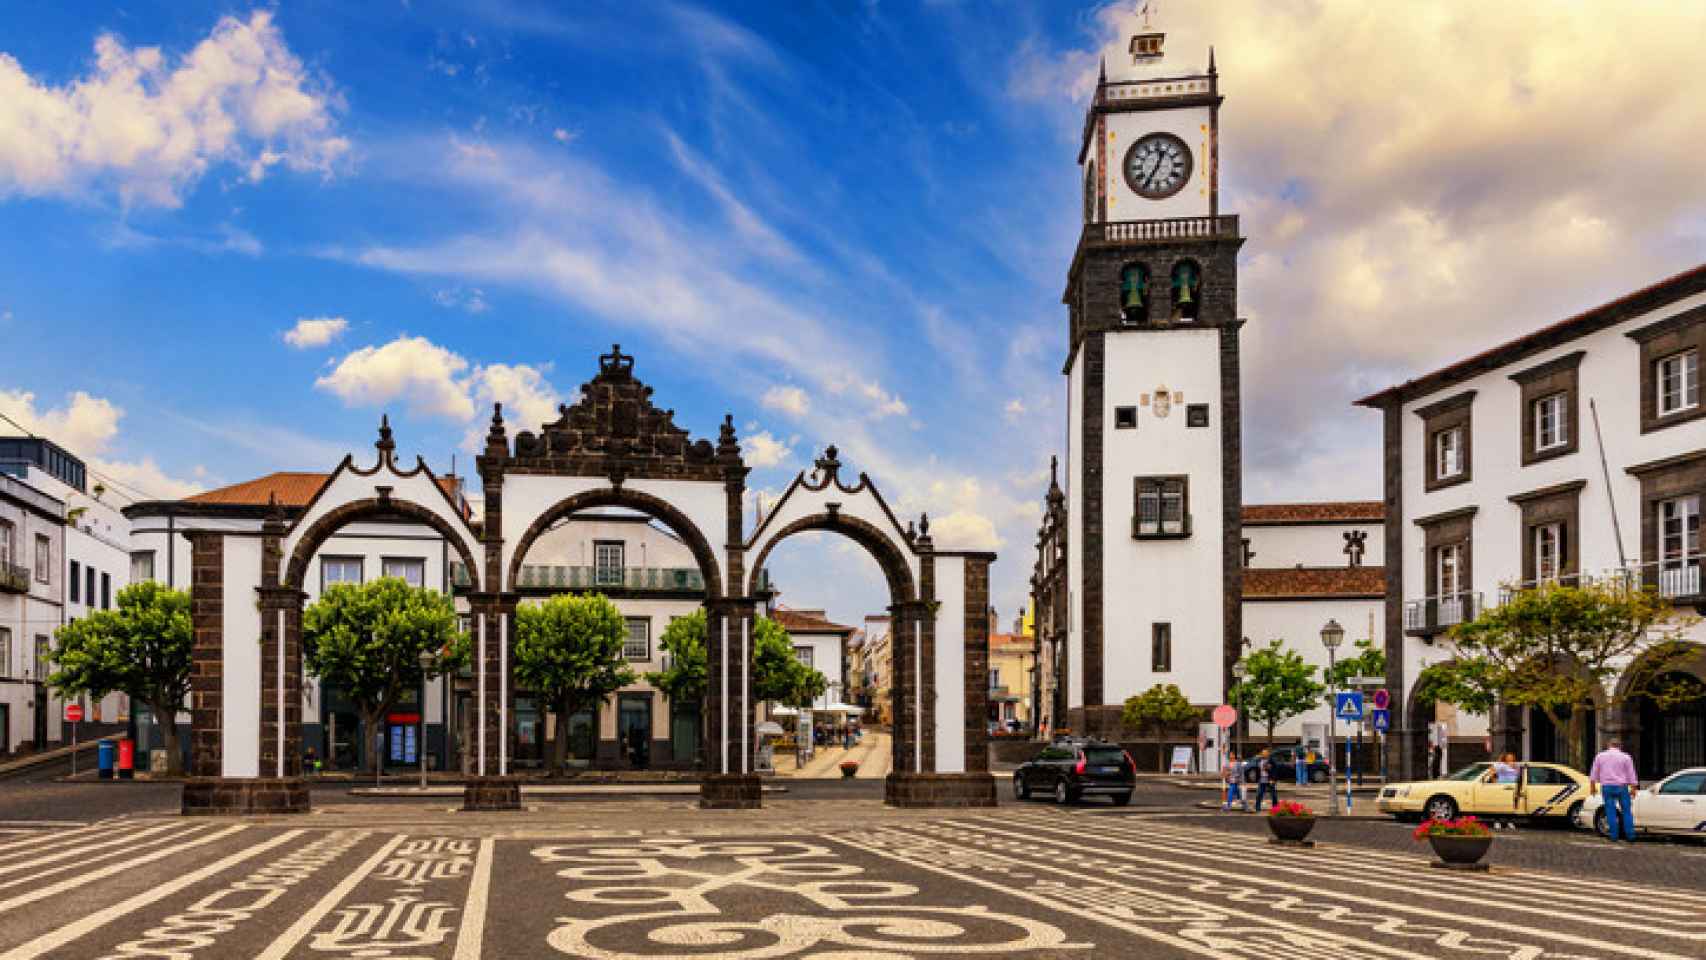 Portas da Cidade, el símbolo de la ciudad de Ponta Delgada en la isla de Sao Miguel en Azores.